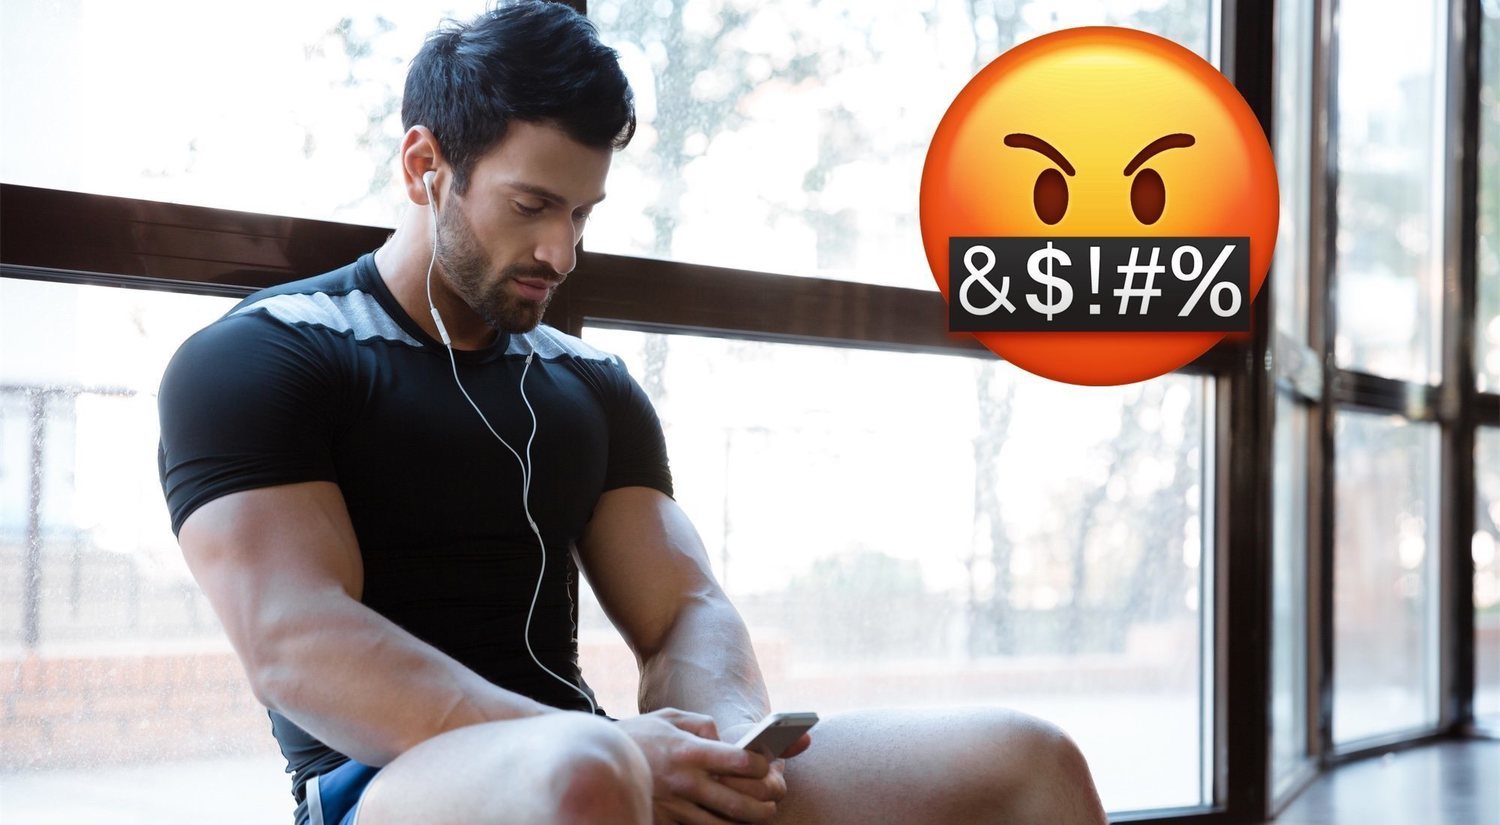 Abusive Gym Reminder, la app que te insulta si no vas al gimnasio